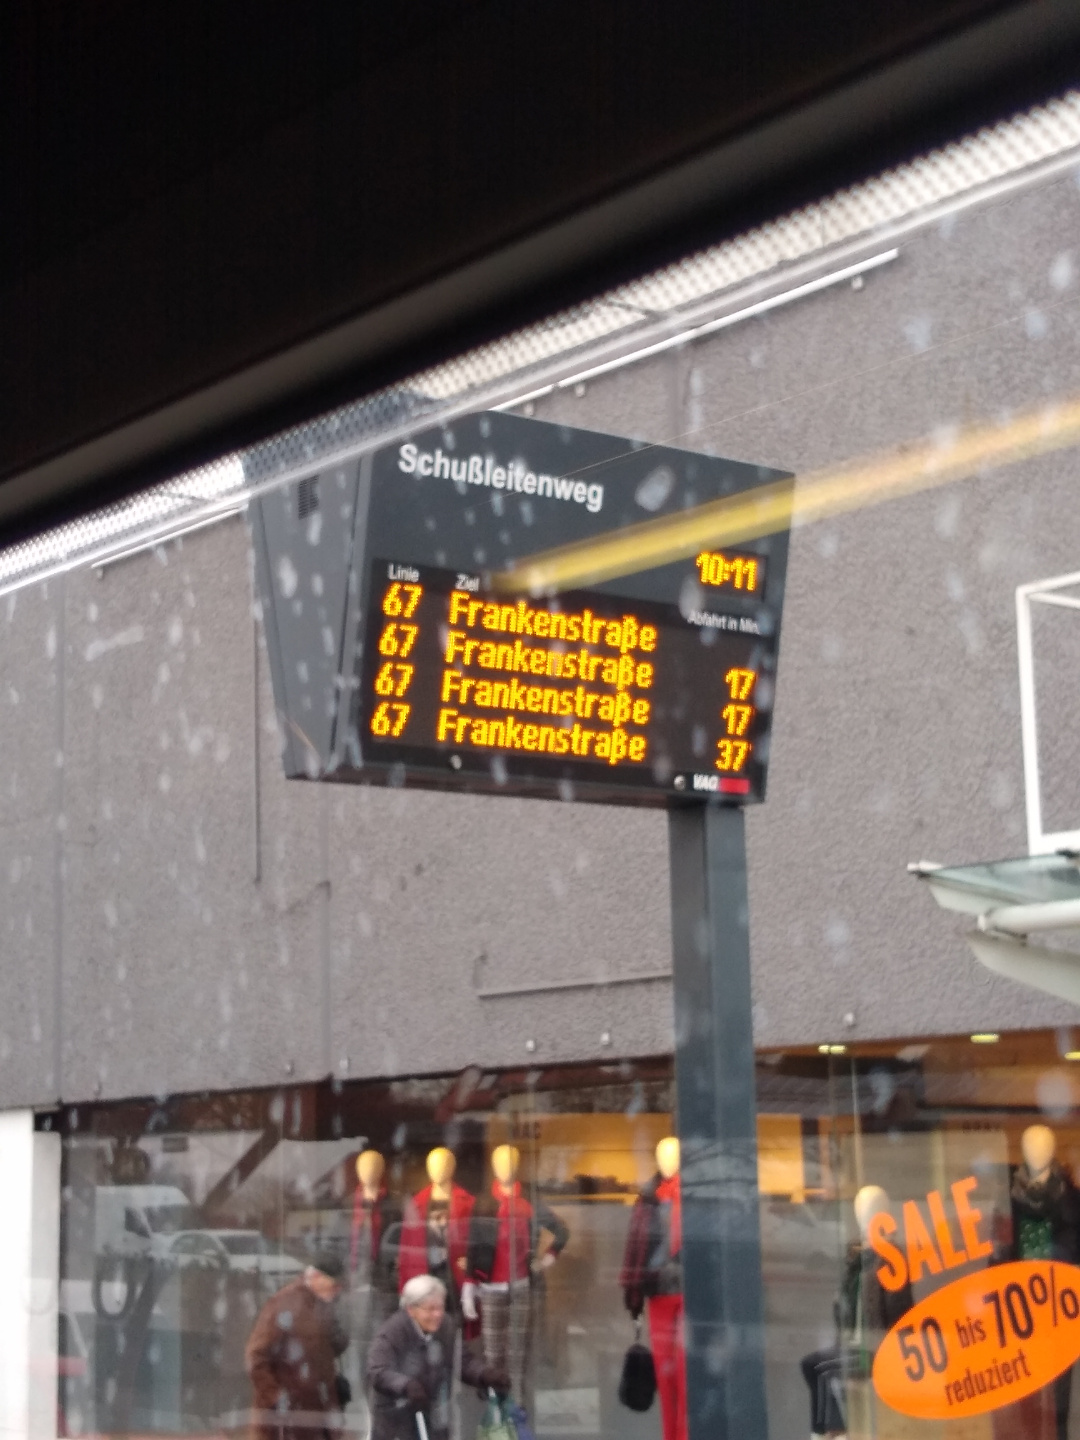 Doppelte Anzeige aller Busse (da Live- und Fahrplan-Daten gleichzeitig vorhanden sind). Auffahrtsmonitor an der Haltestelle Schußleitenweg Richtung Frankenstraße. Angeblich fahren in 17 Minuten zwei Busse gleichzeitig ab.